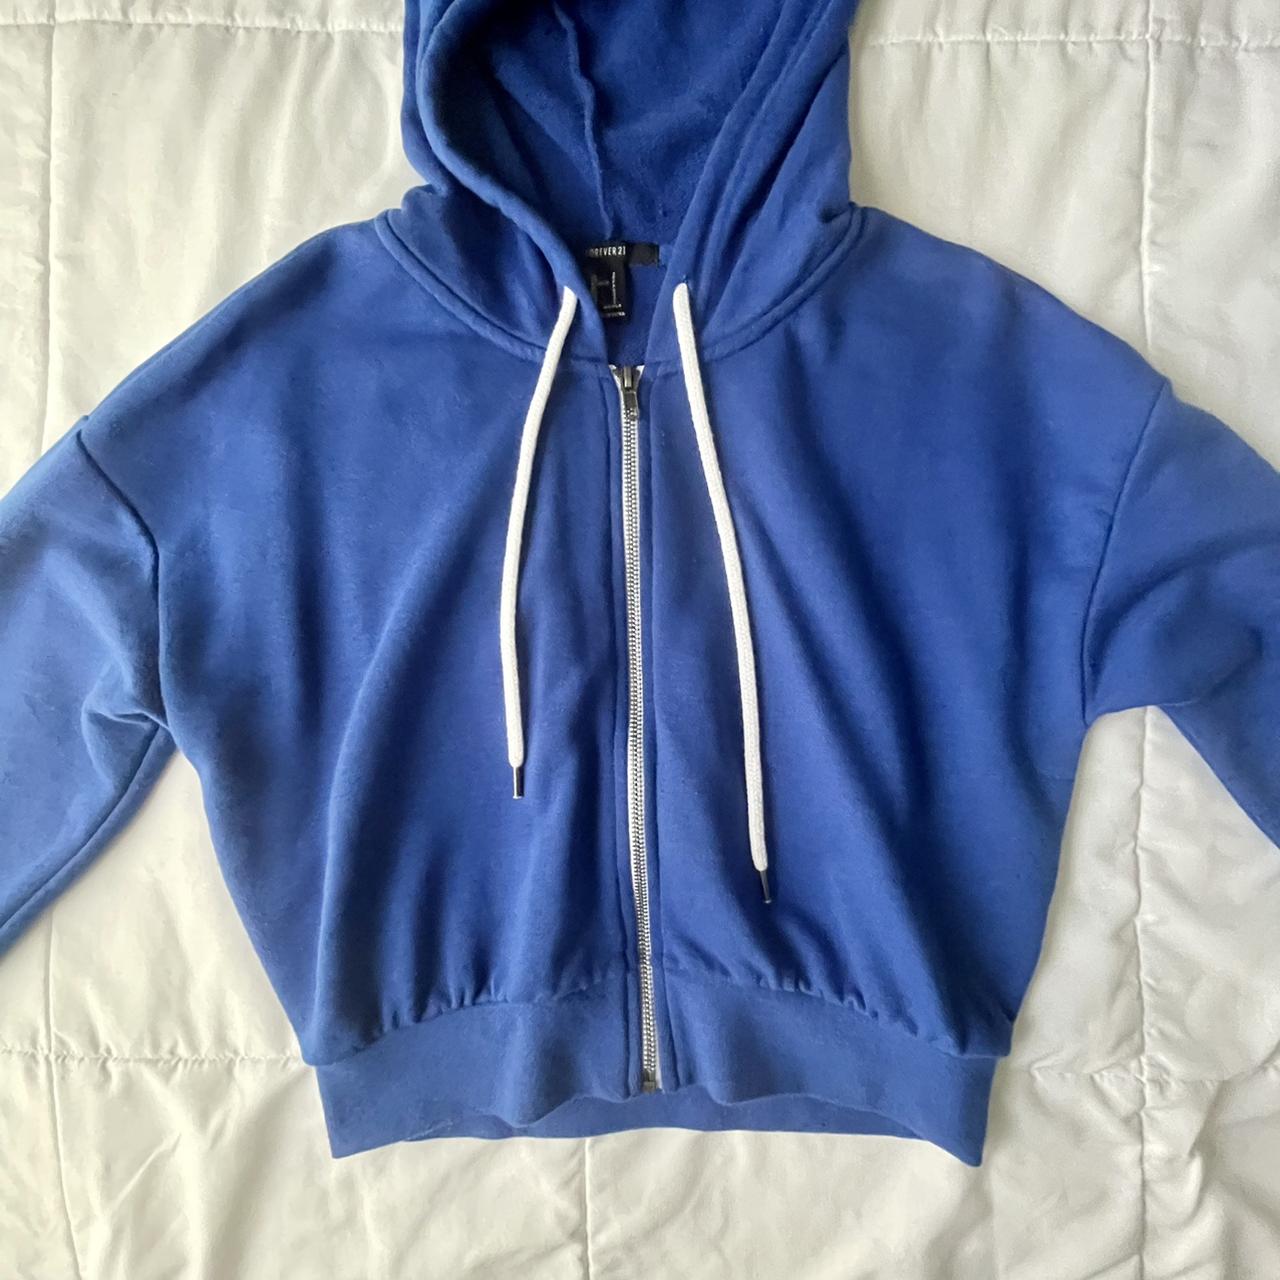 ୨୧ blue zip up hoodie ♡ *:･ﾟ *:･ﾟ perfect... - Depop